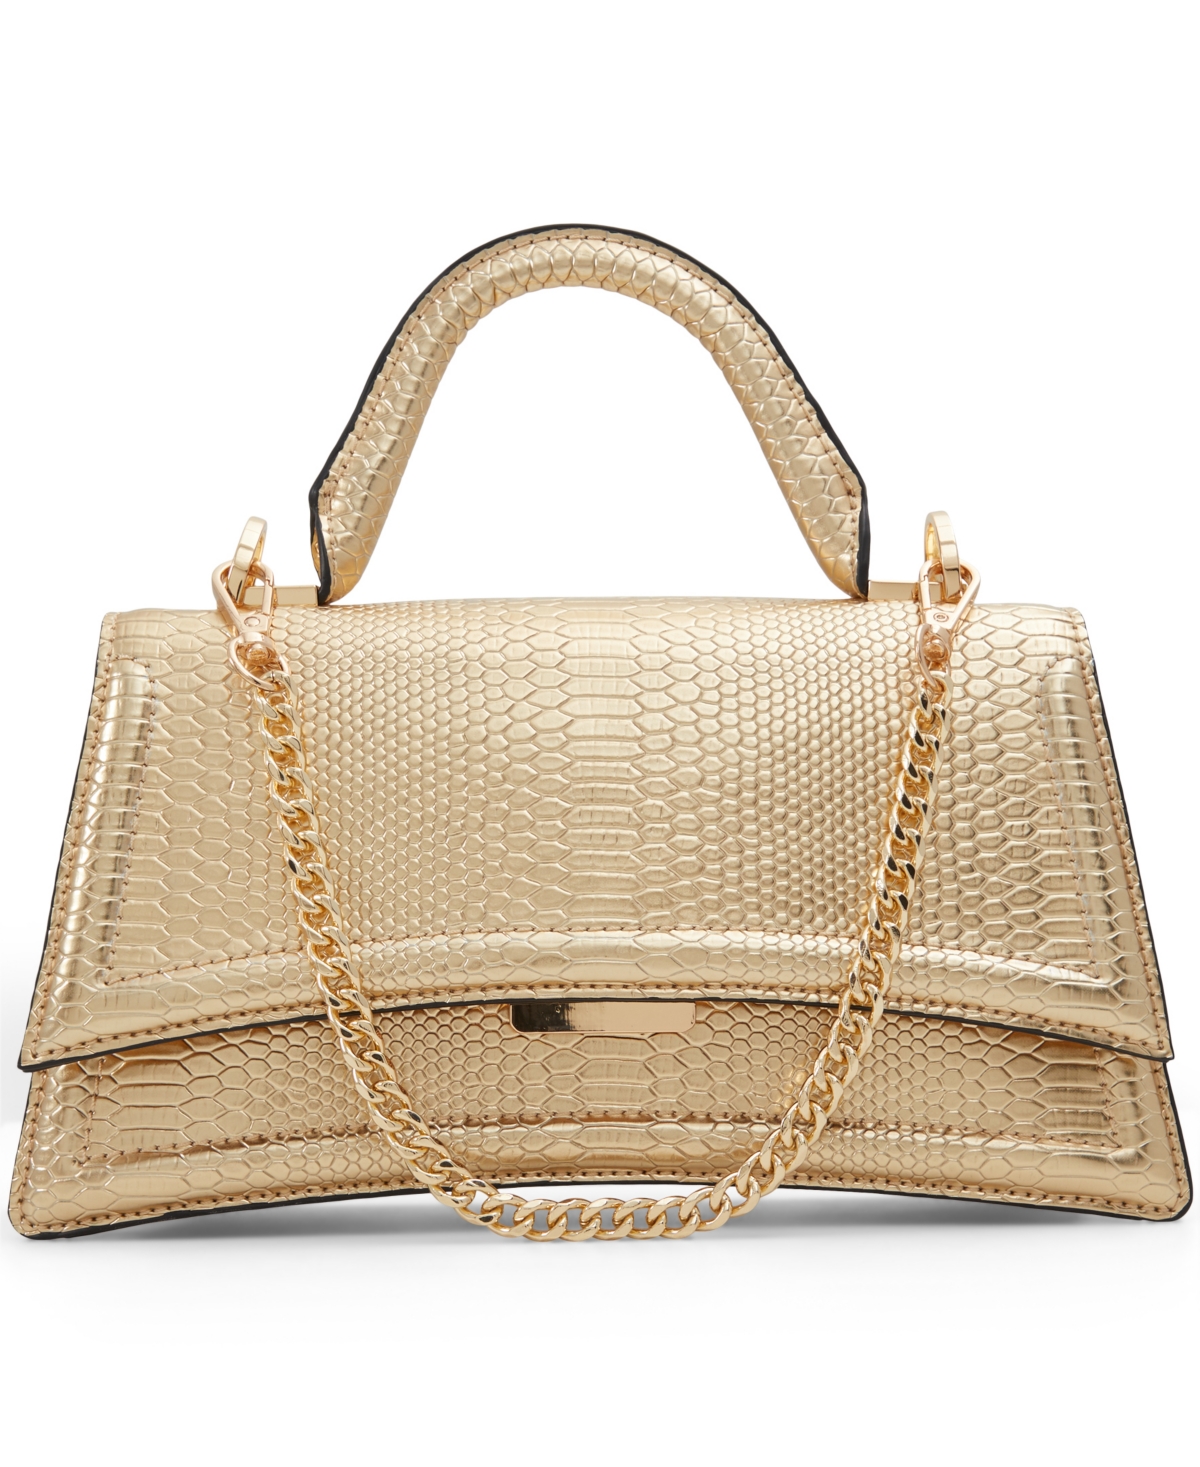 Aldo Attleyyx Synthetic Medium Top Handle Bag In Gold